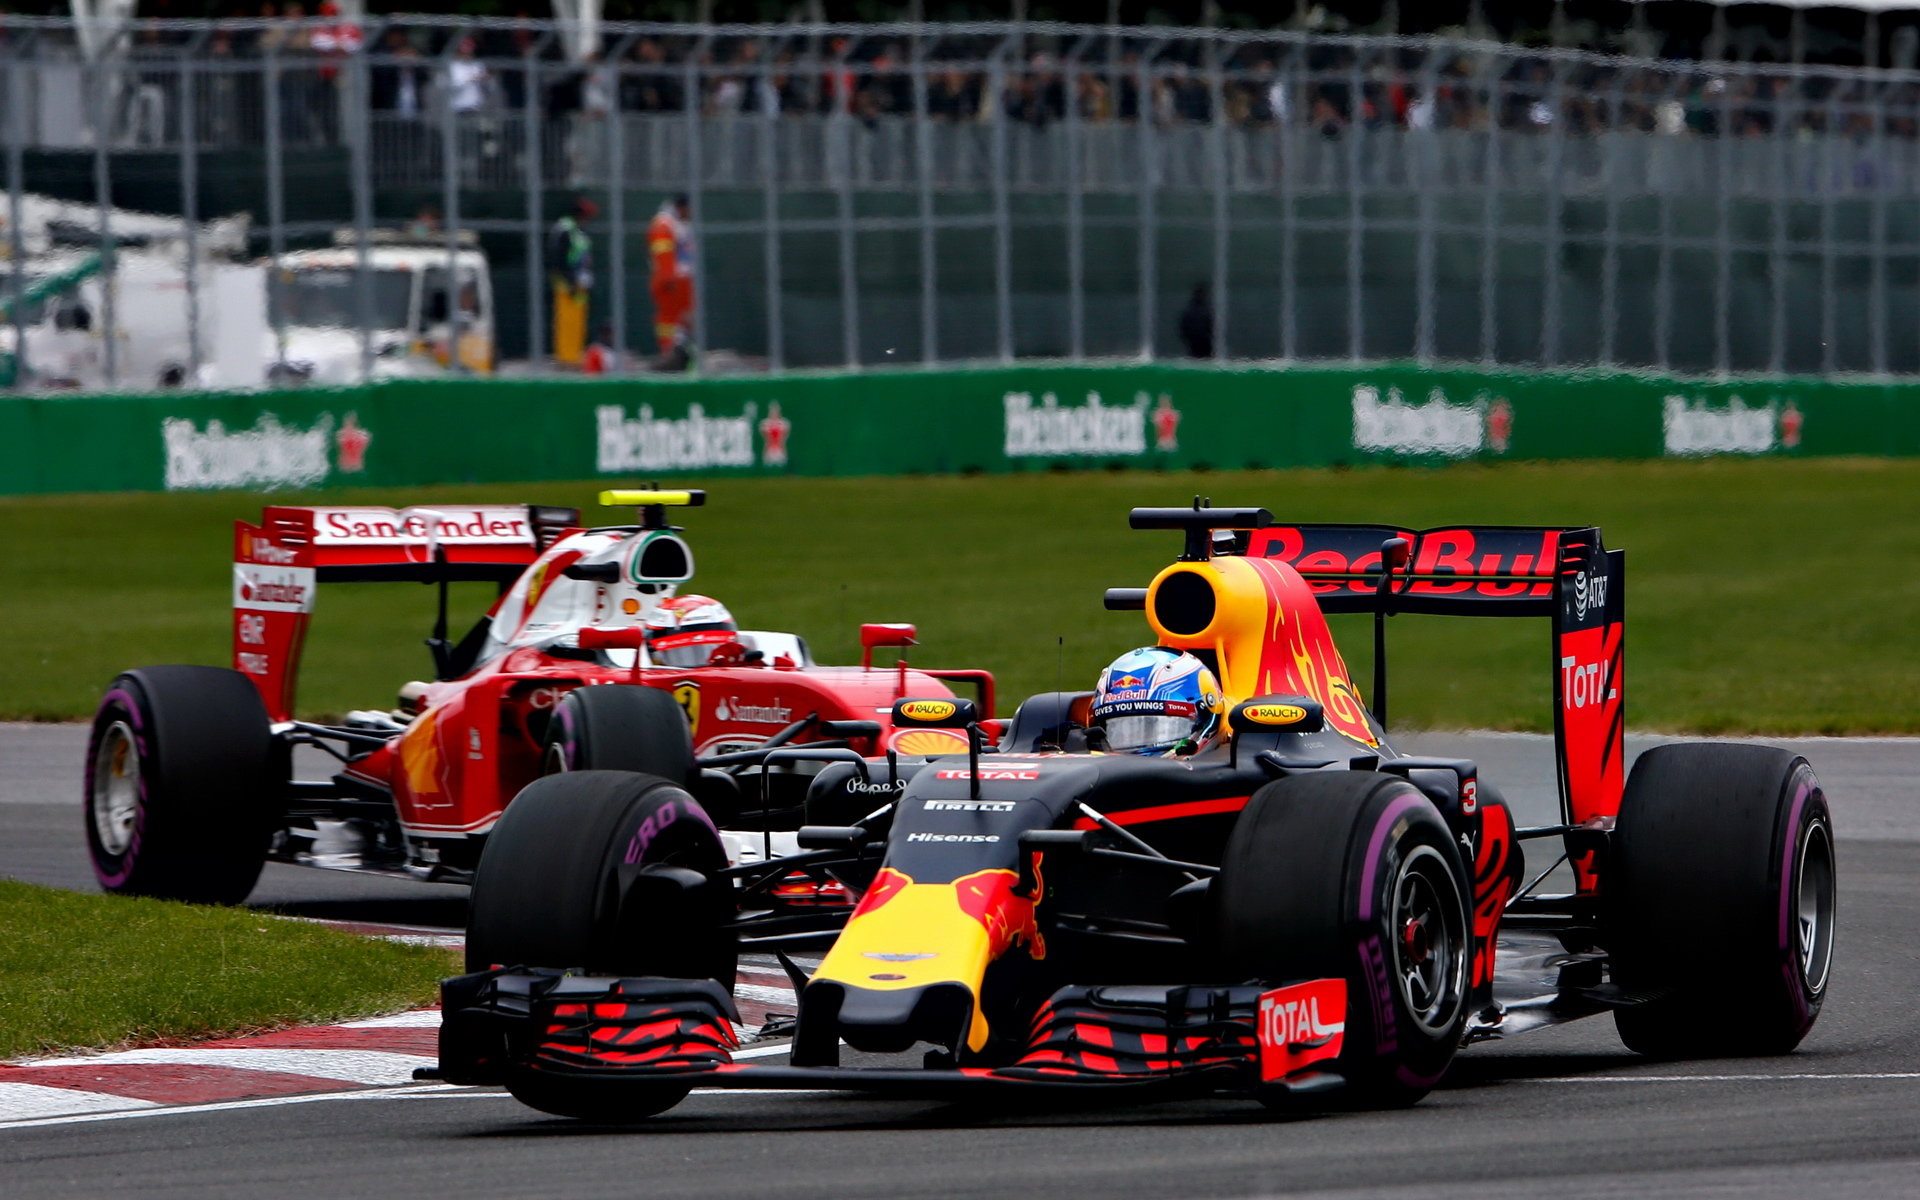 Daniel Ricciardo a Kimi Räikkönen v závodě v Kanadě